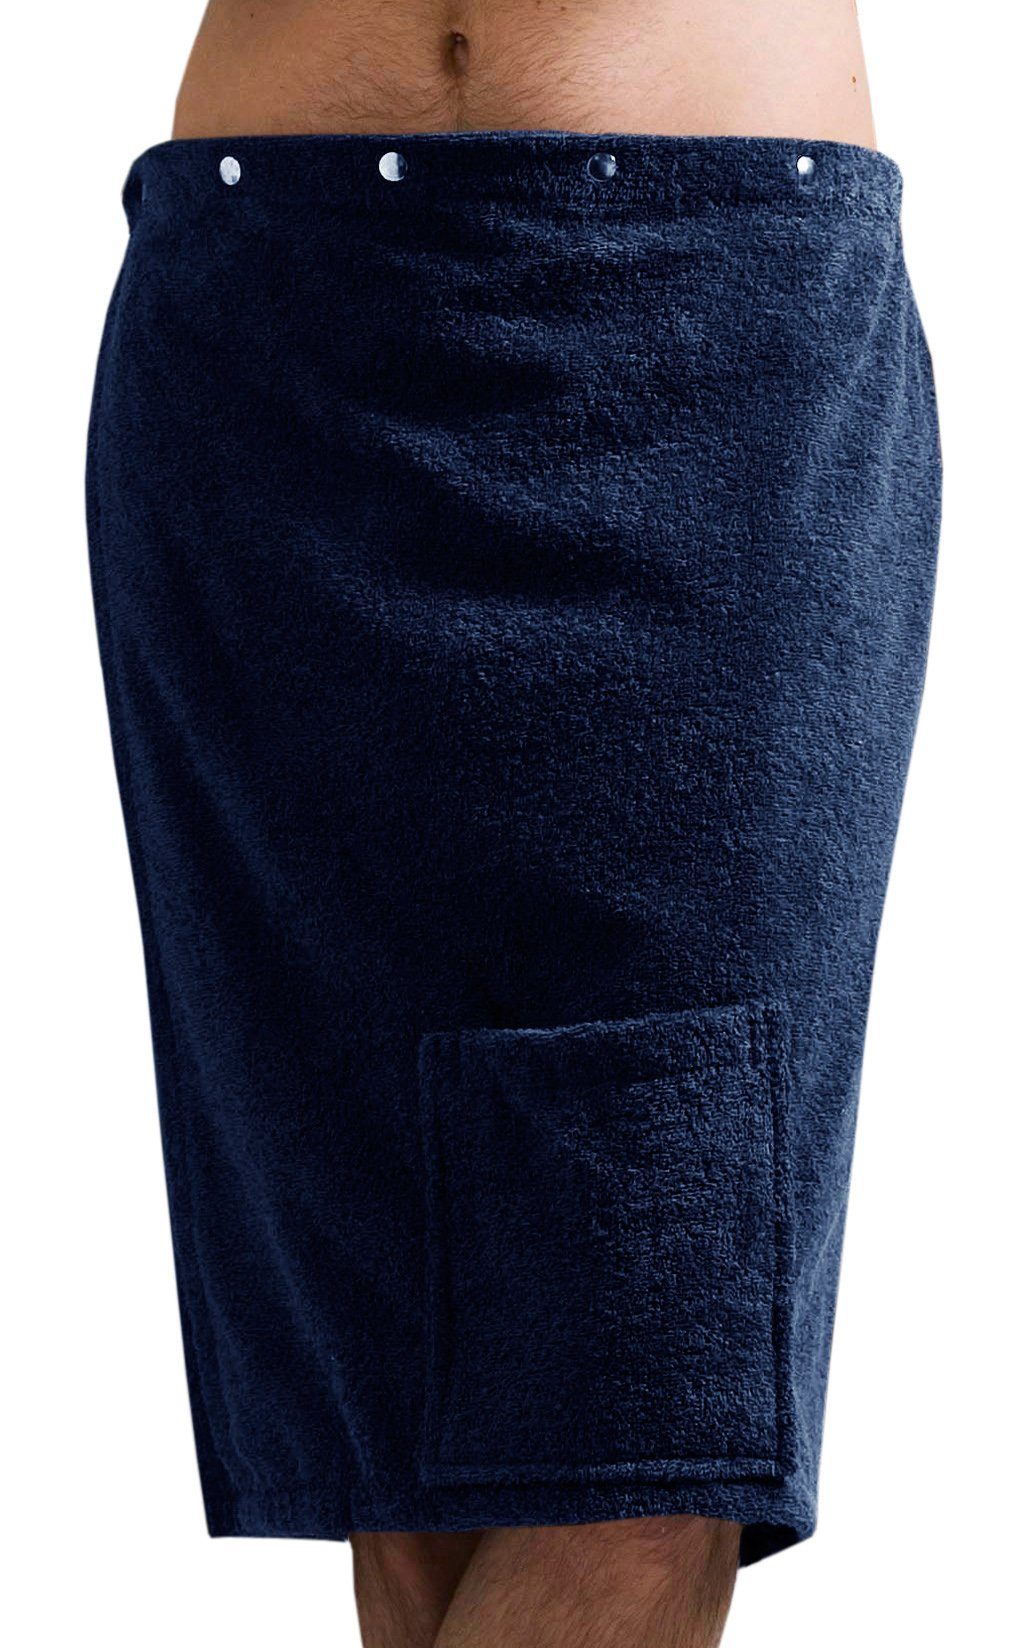 Knöpfe, der kuschelige Saunarock Lashuma für Kilt, Kurzform, Männer - Baumwolle, jeansblau